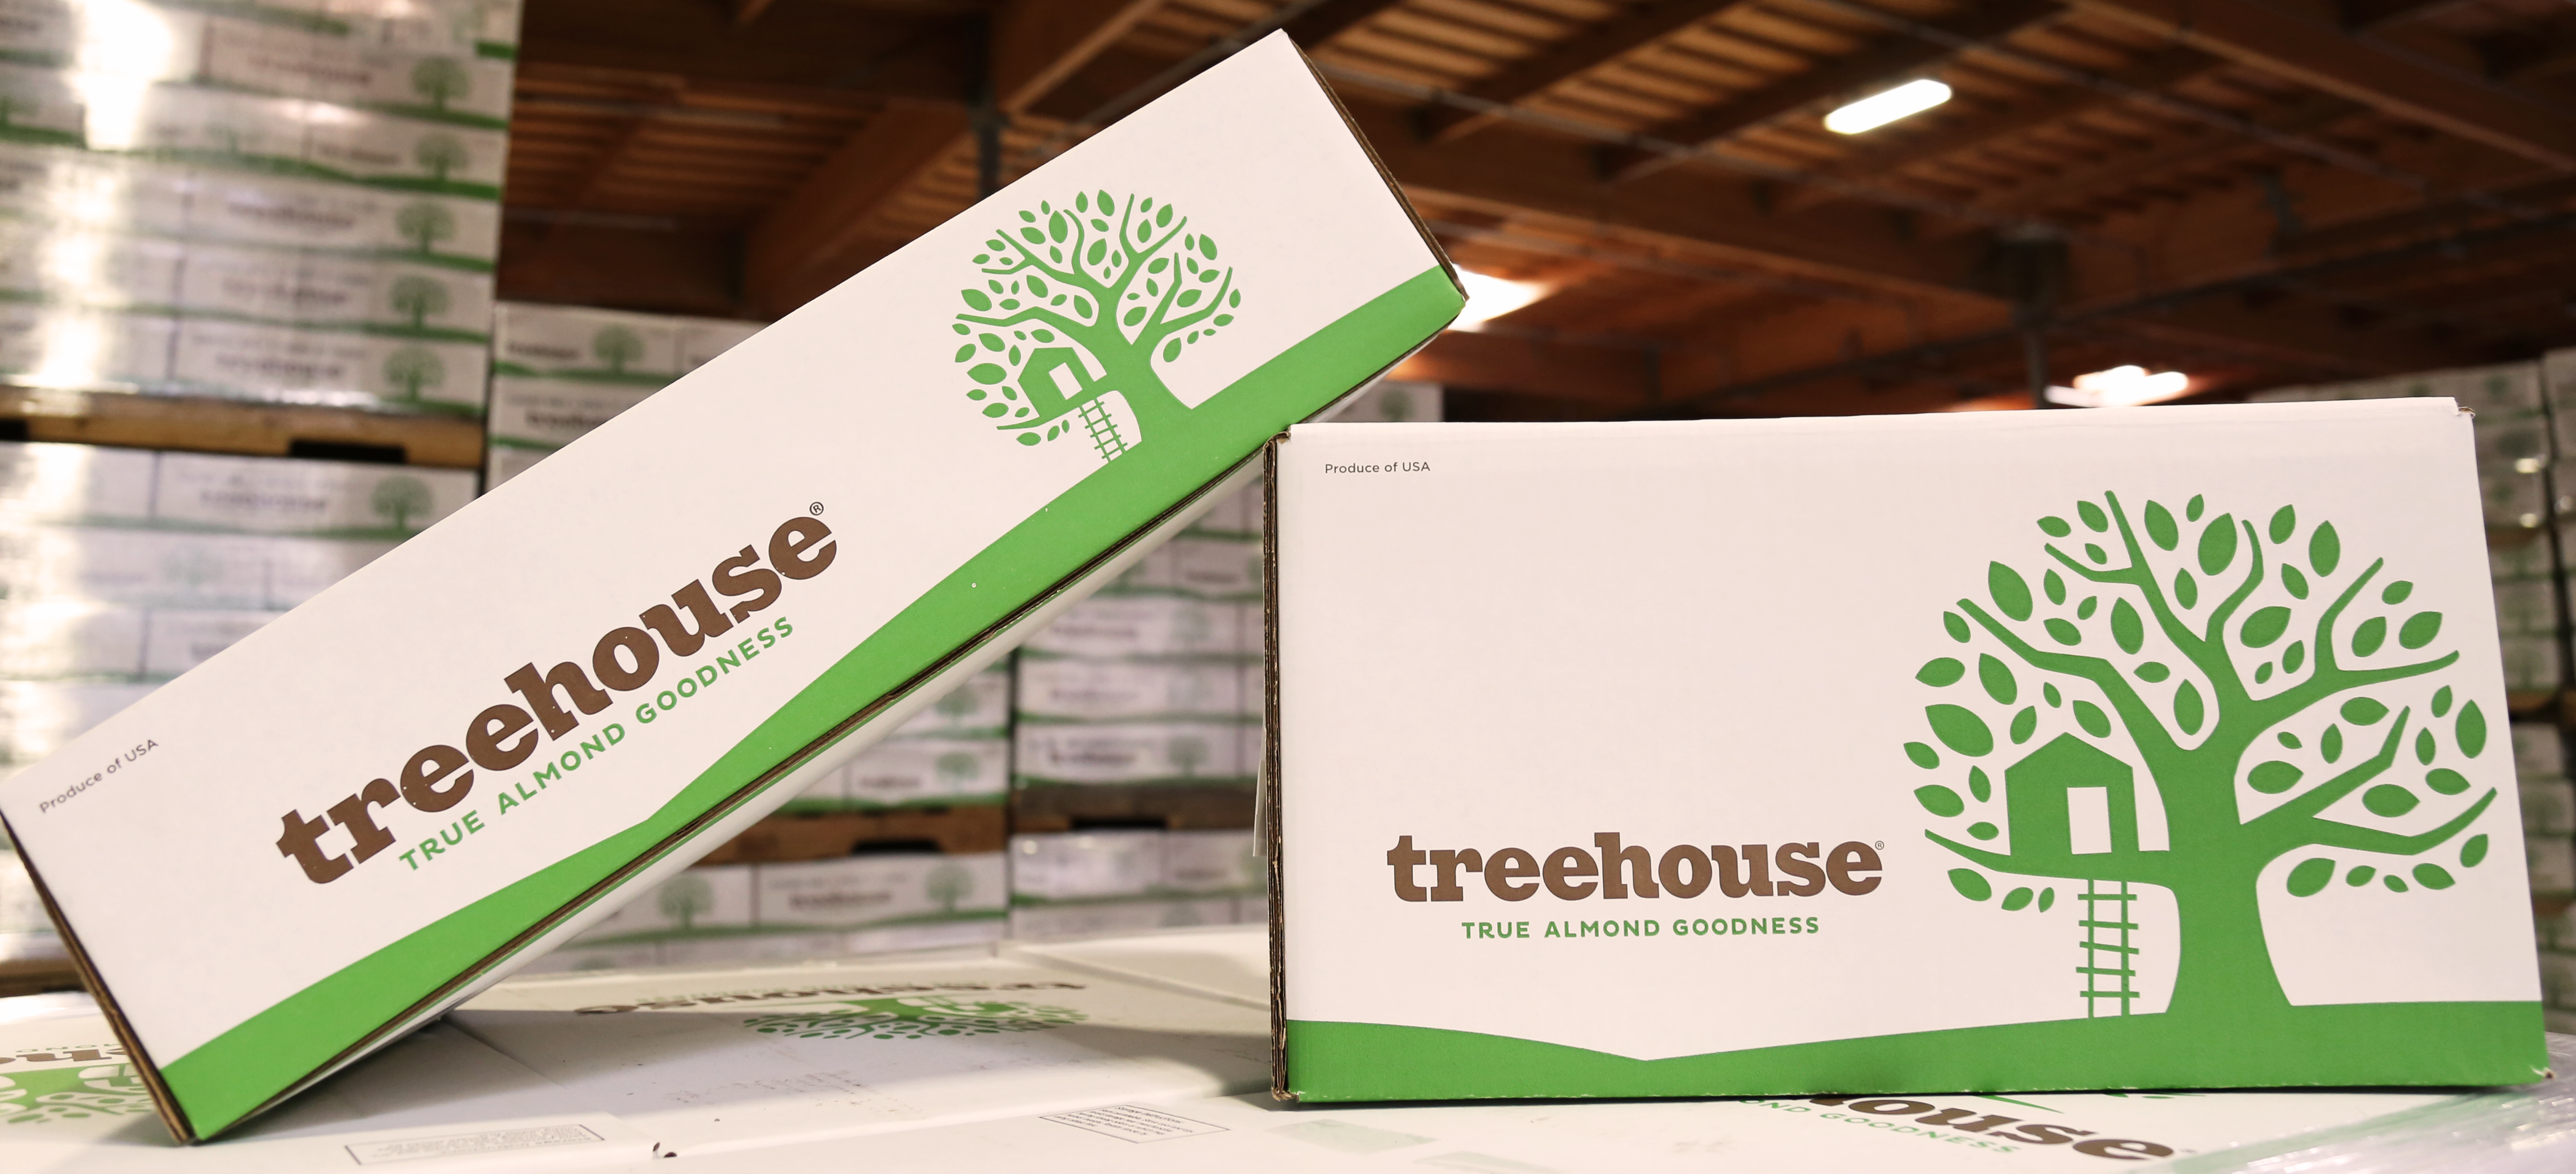 TreeHouse Almonds Storage